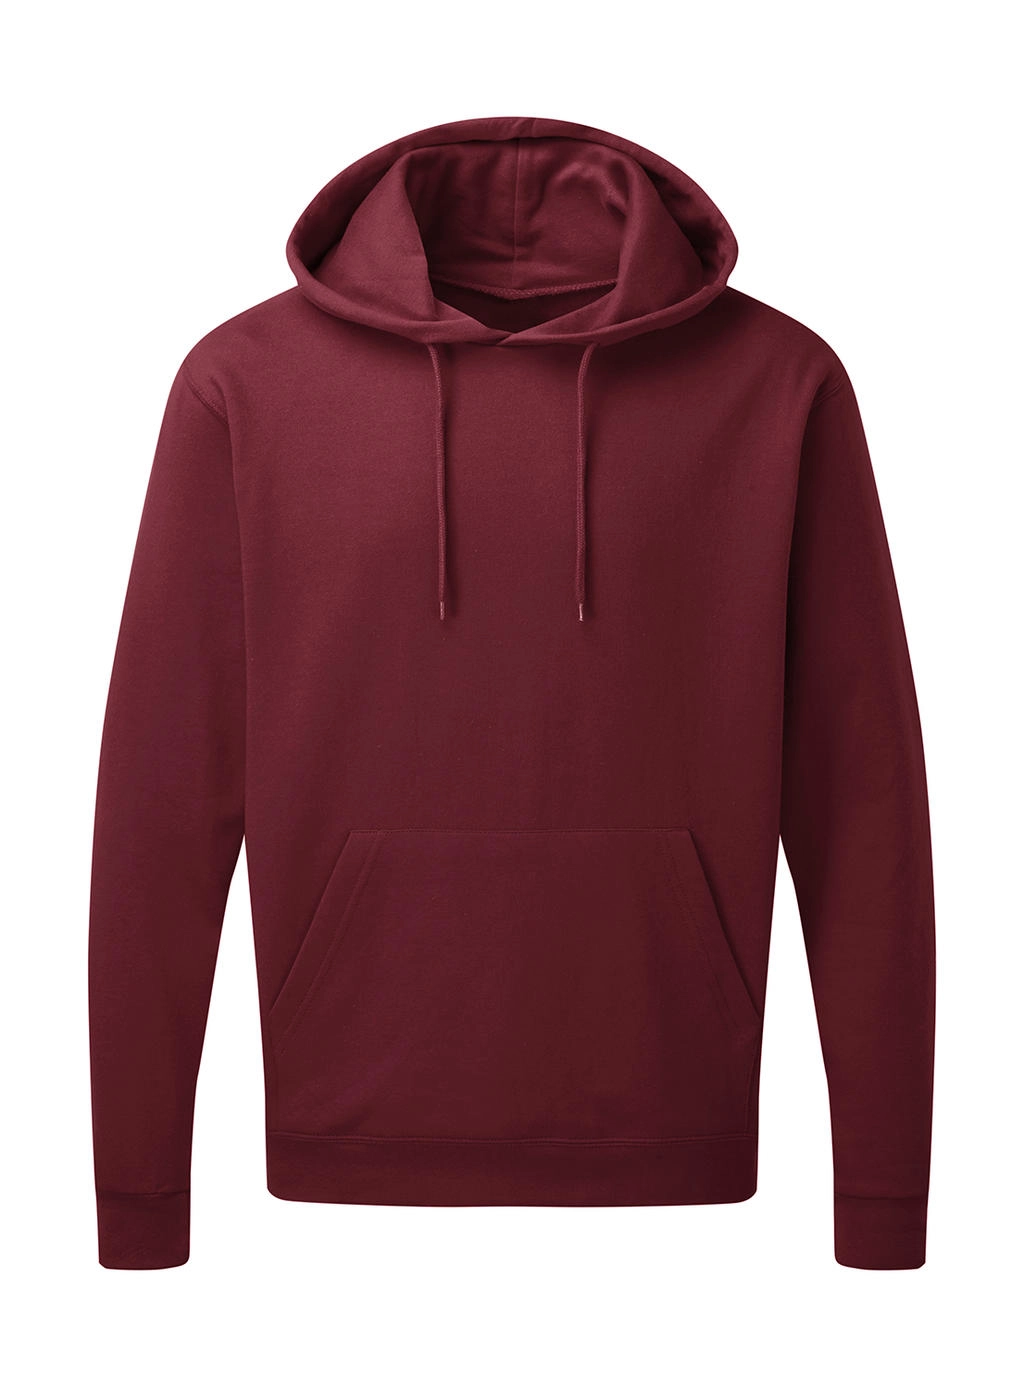 Hooded Sweatshirt Men zum Besticken und Bedrucken in der Farbe Burgundy mit Ihren Logo, Schriftzug oder Motiv.